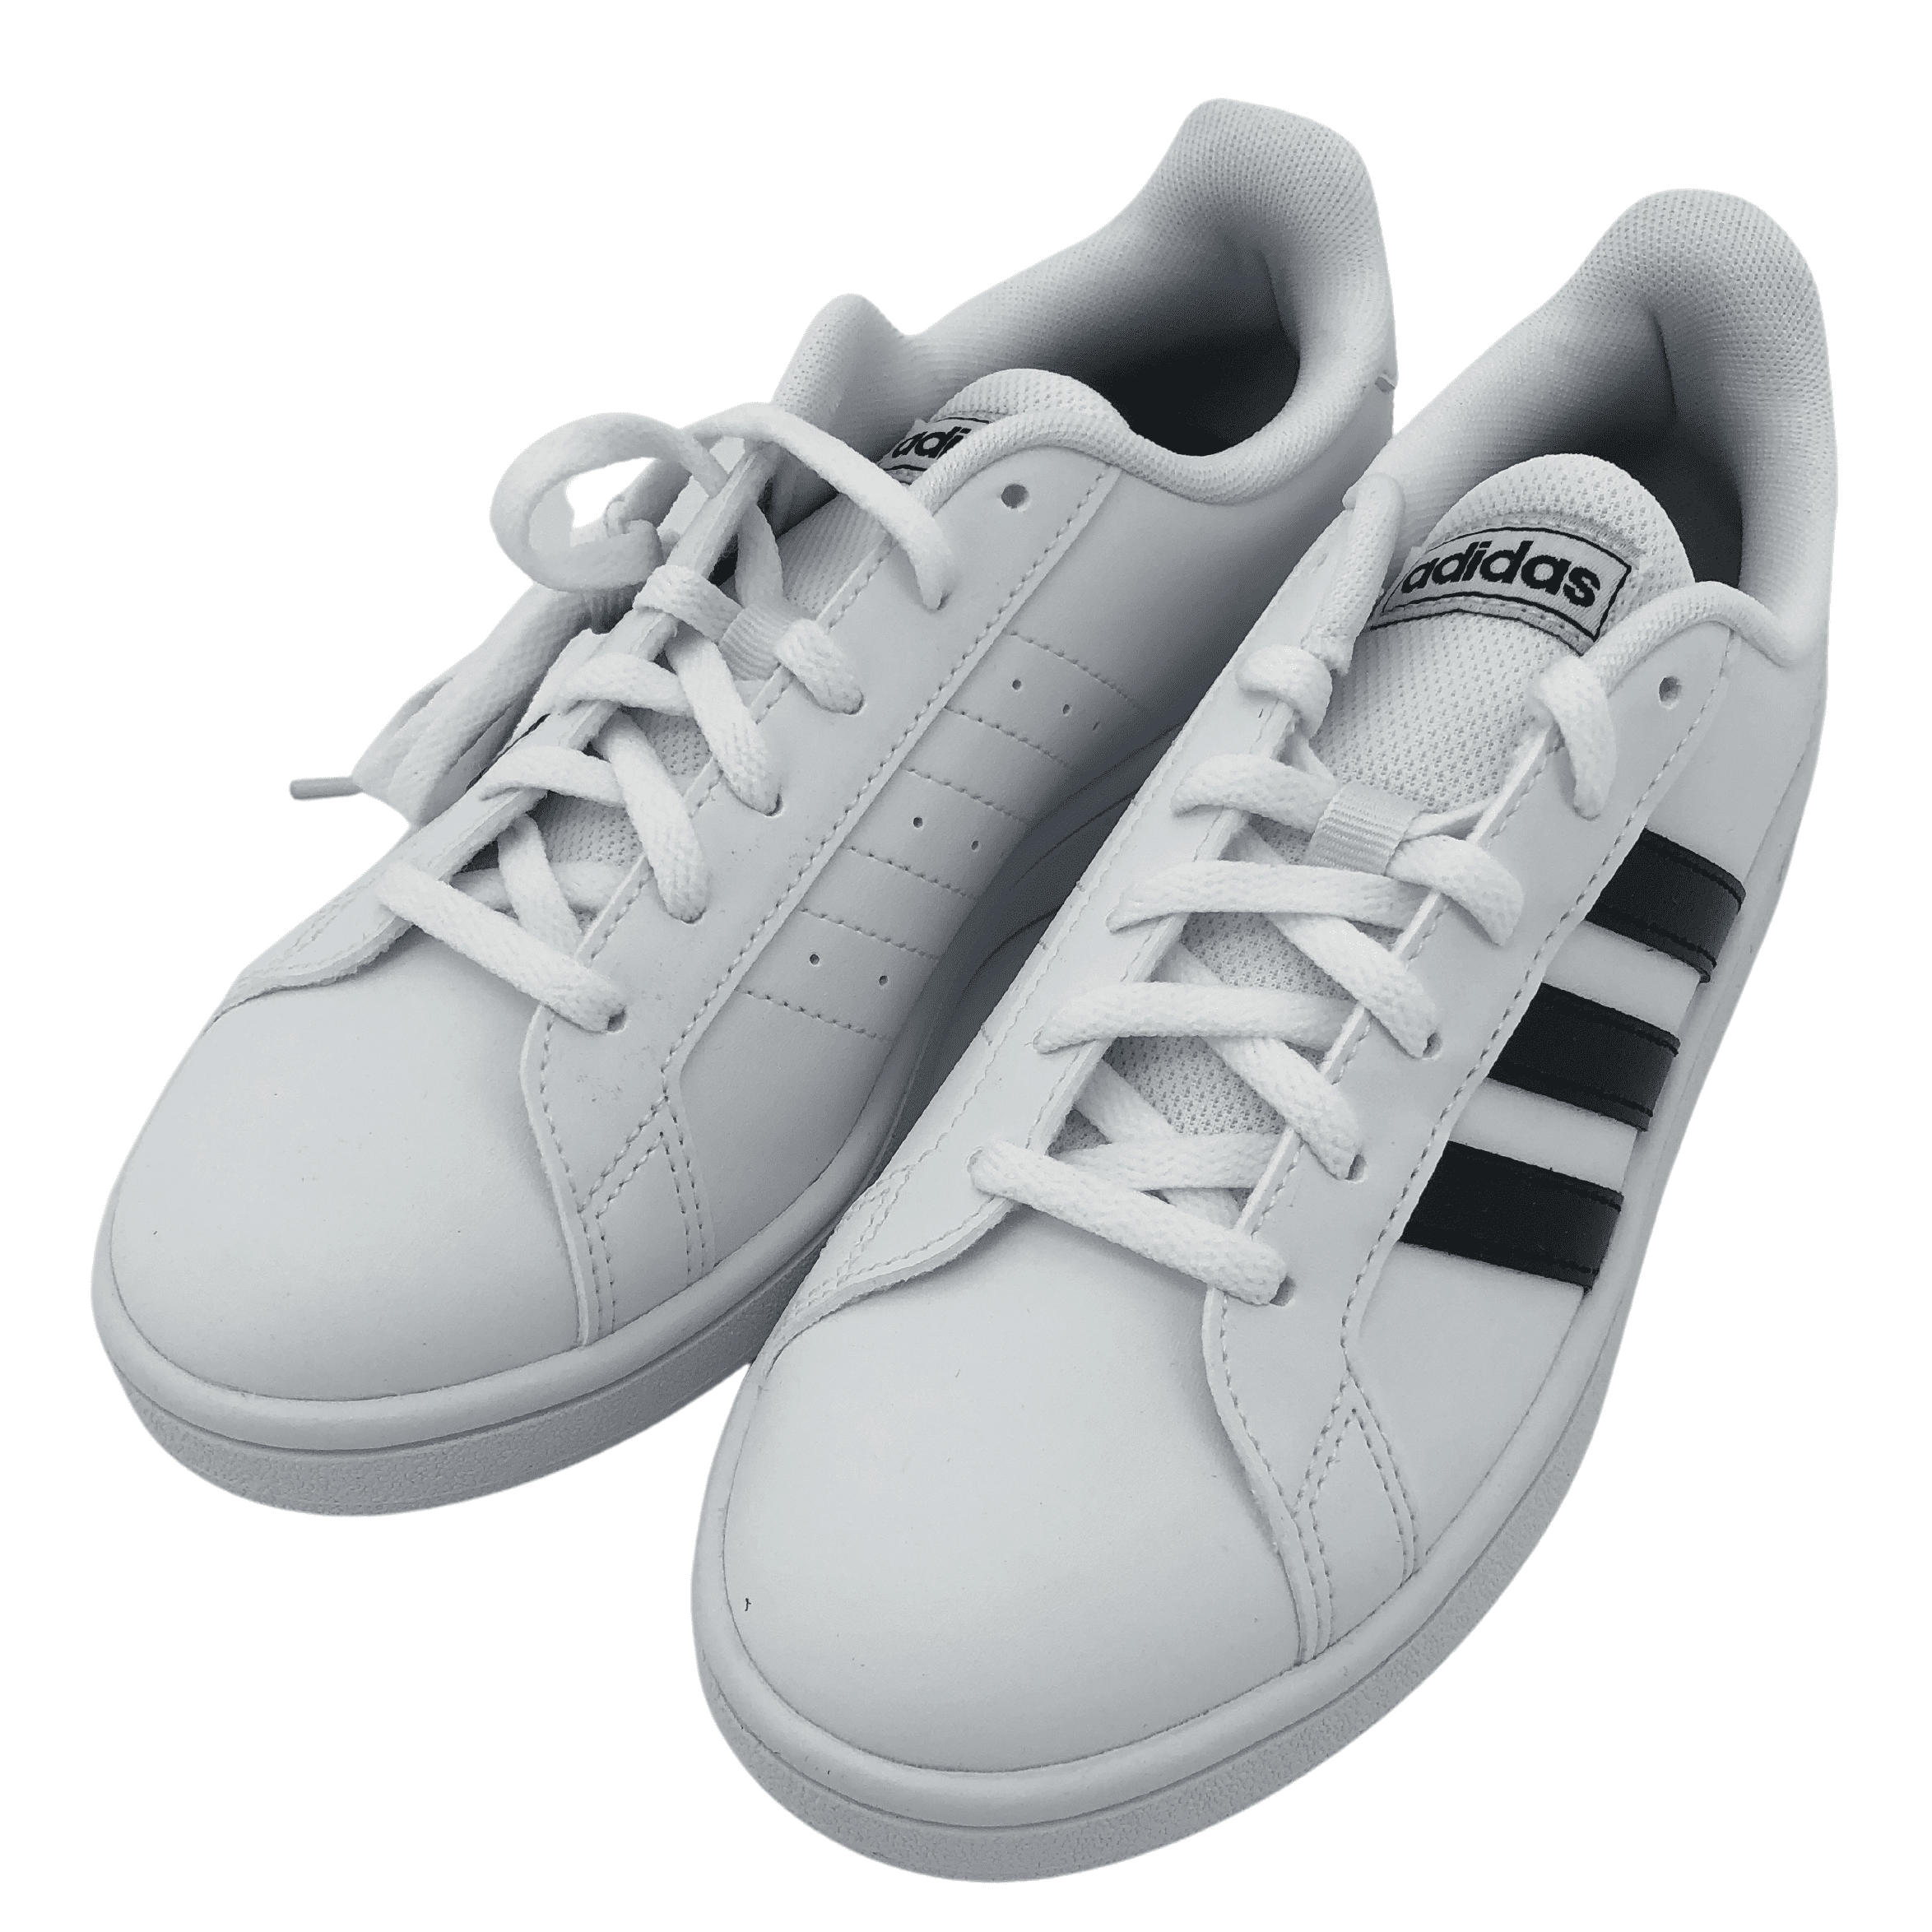 Adidas Women's Sneaker: Grand Court Base / White w/ Classic Black Stripes / Various Sizes